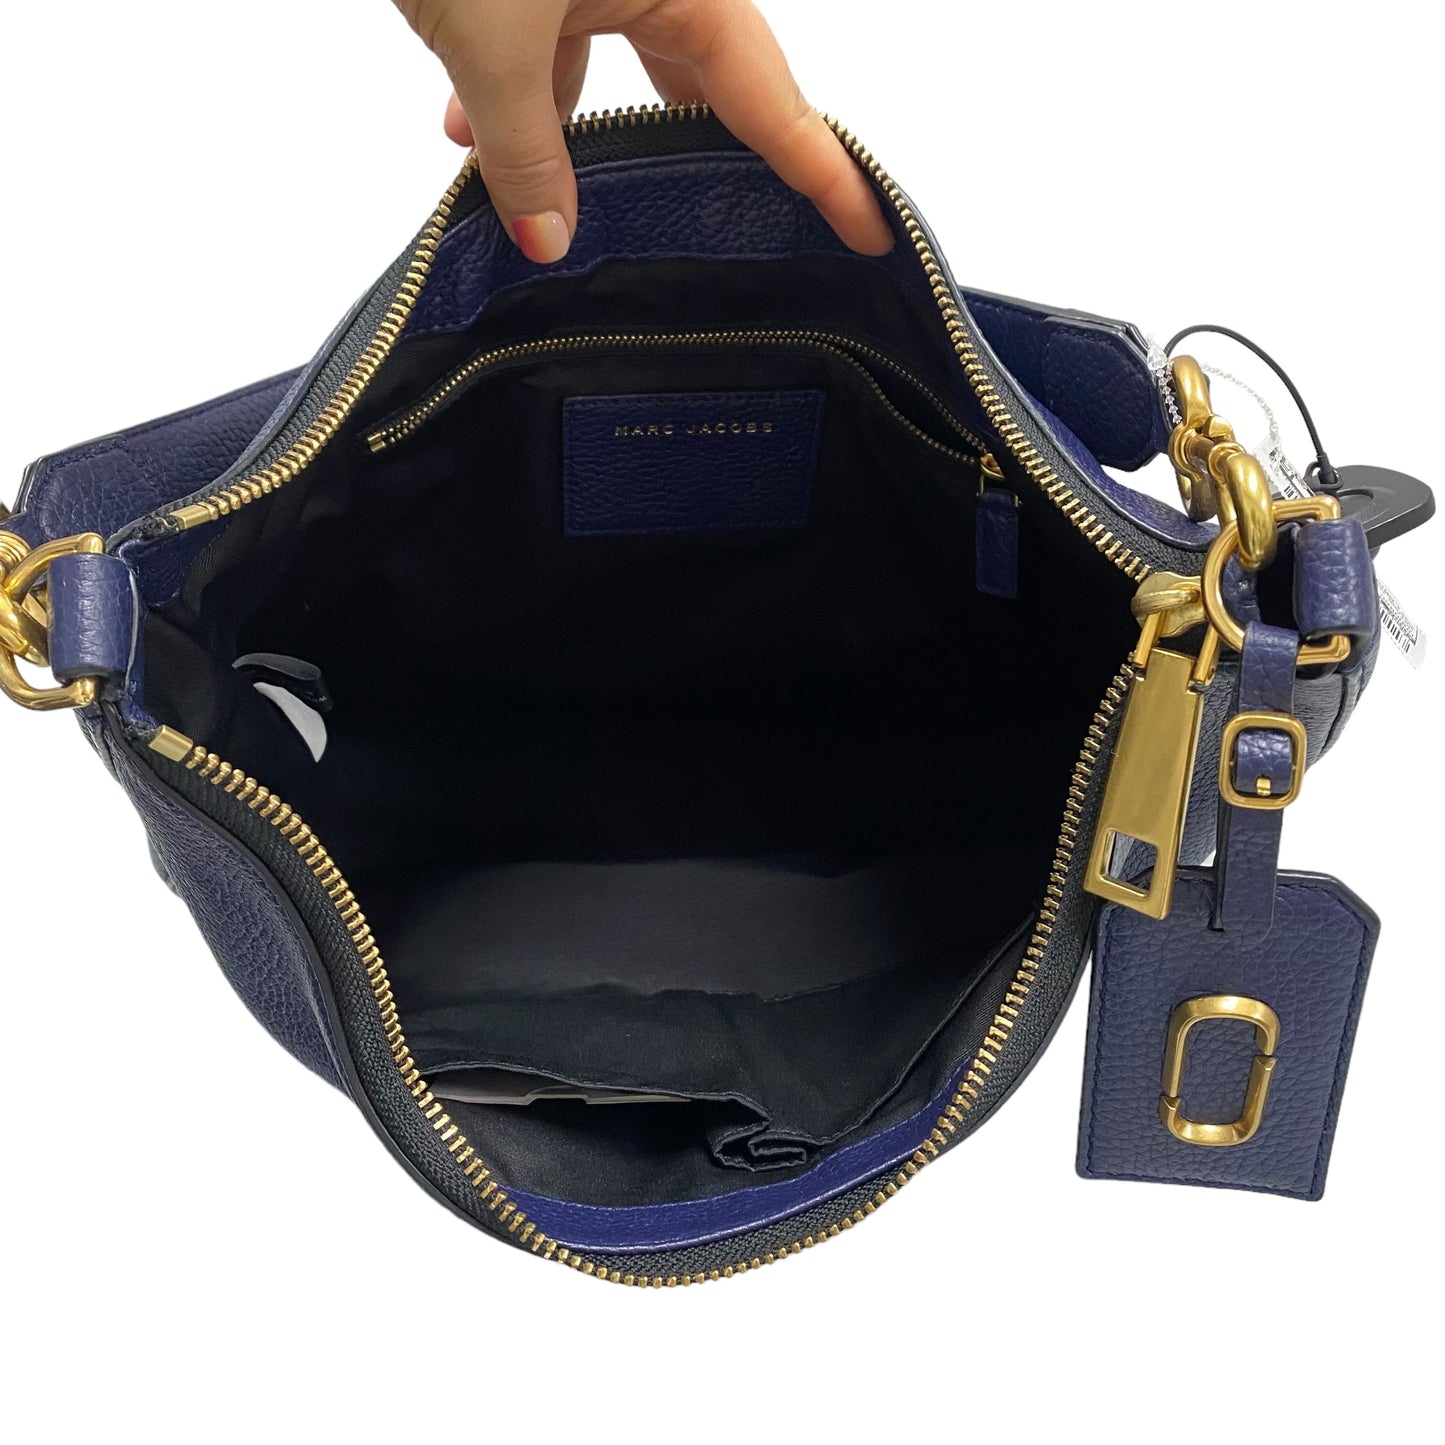 Navy Handbag Designer Marc Jacobs, Size Large